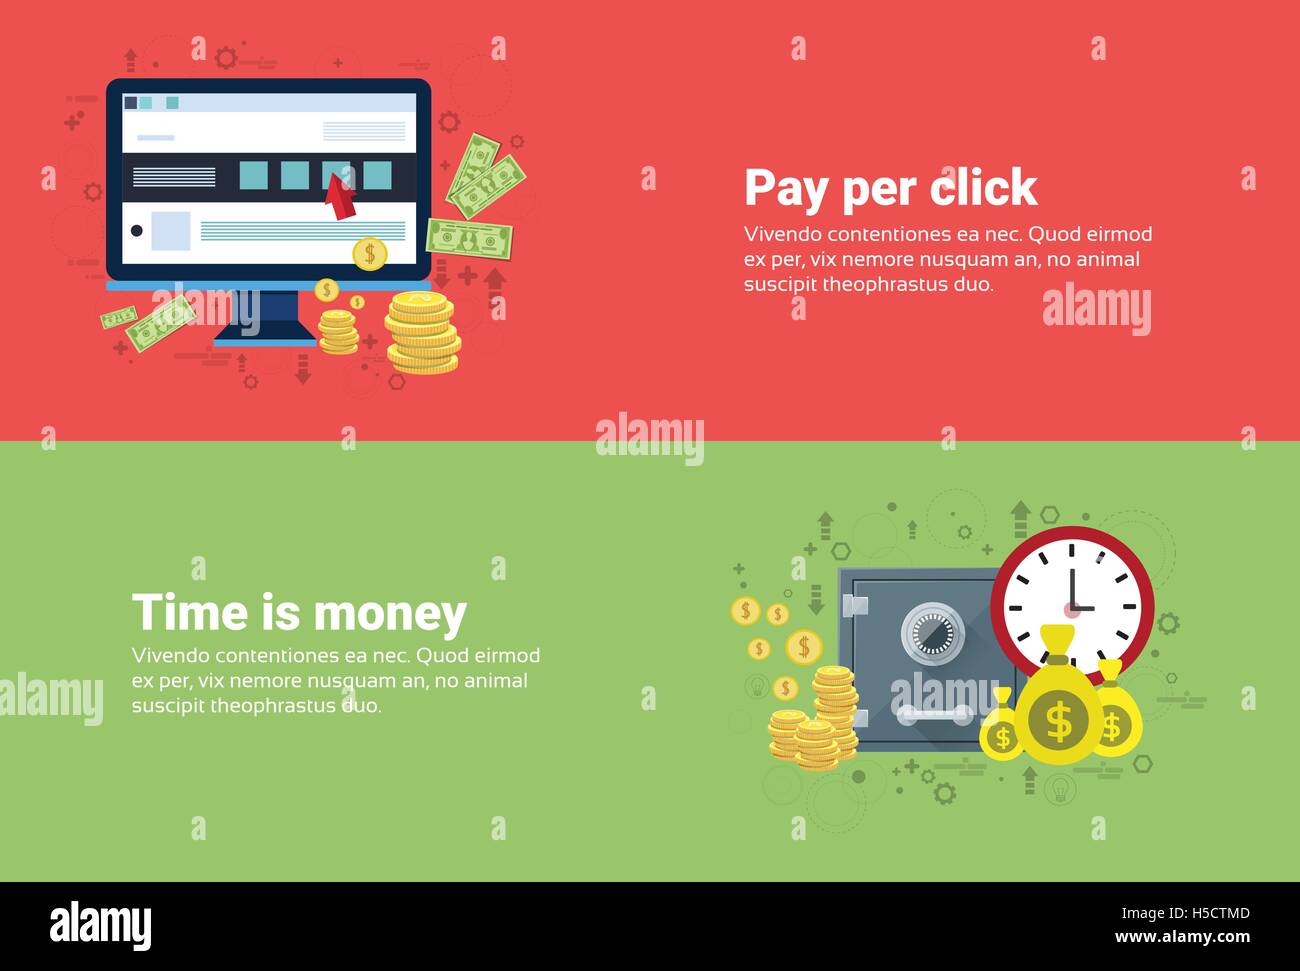 Zeit ist Geld, Pay-Per-Uhr-Online-Payment-Web-Banner Stock Vektor